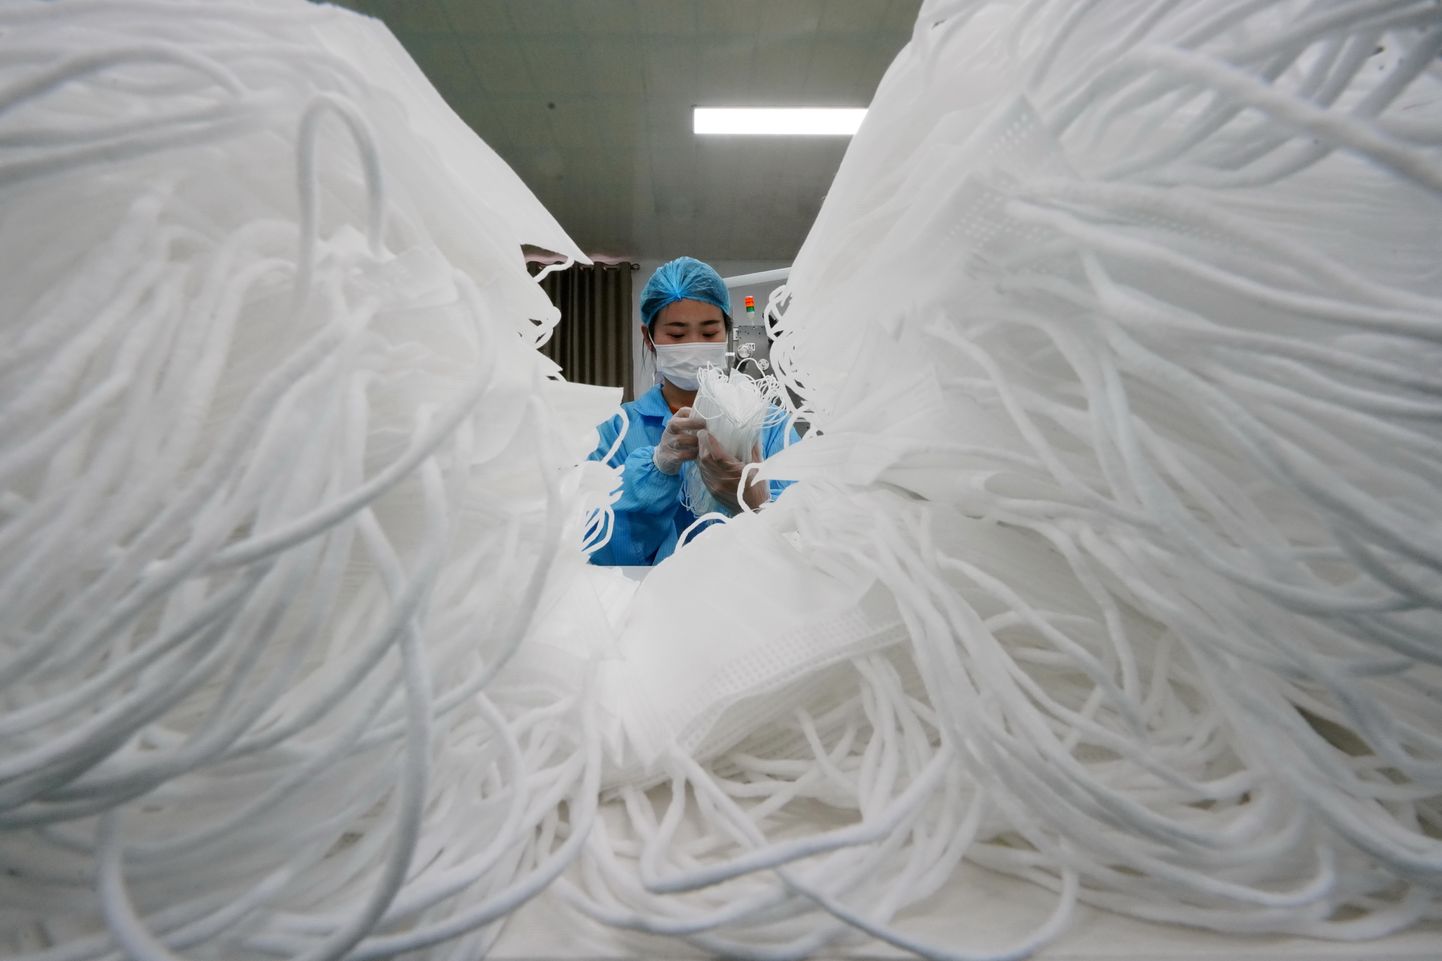 Hiina tööline vabrikus maske loendamas.